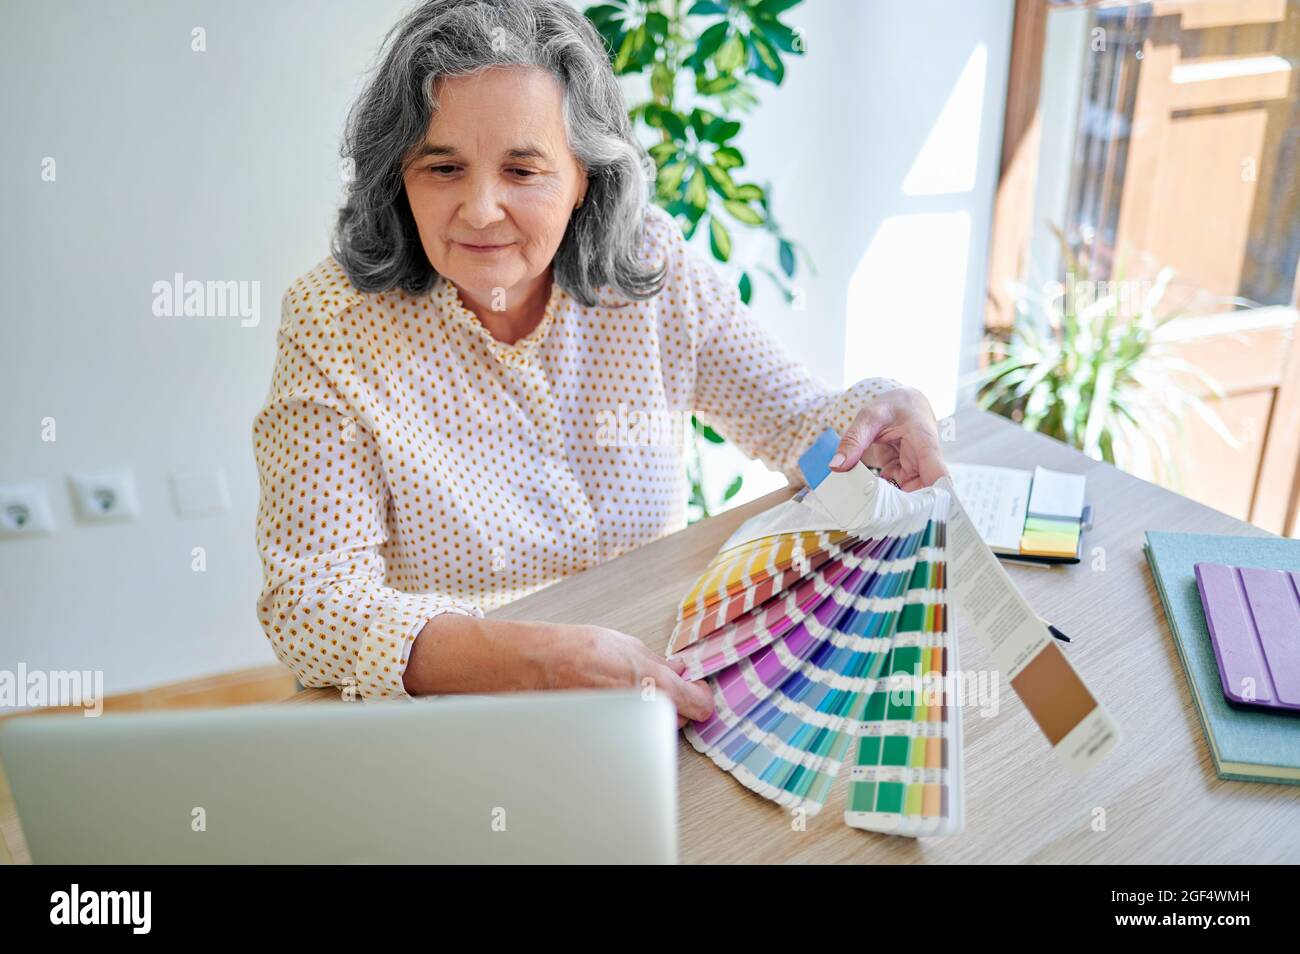 Professionnel de la conception féminine montrant une nuance de couleur lors d'un appel vidéo via un ordinateur portable Banque D'Images